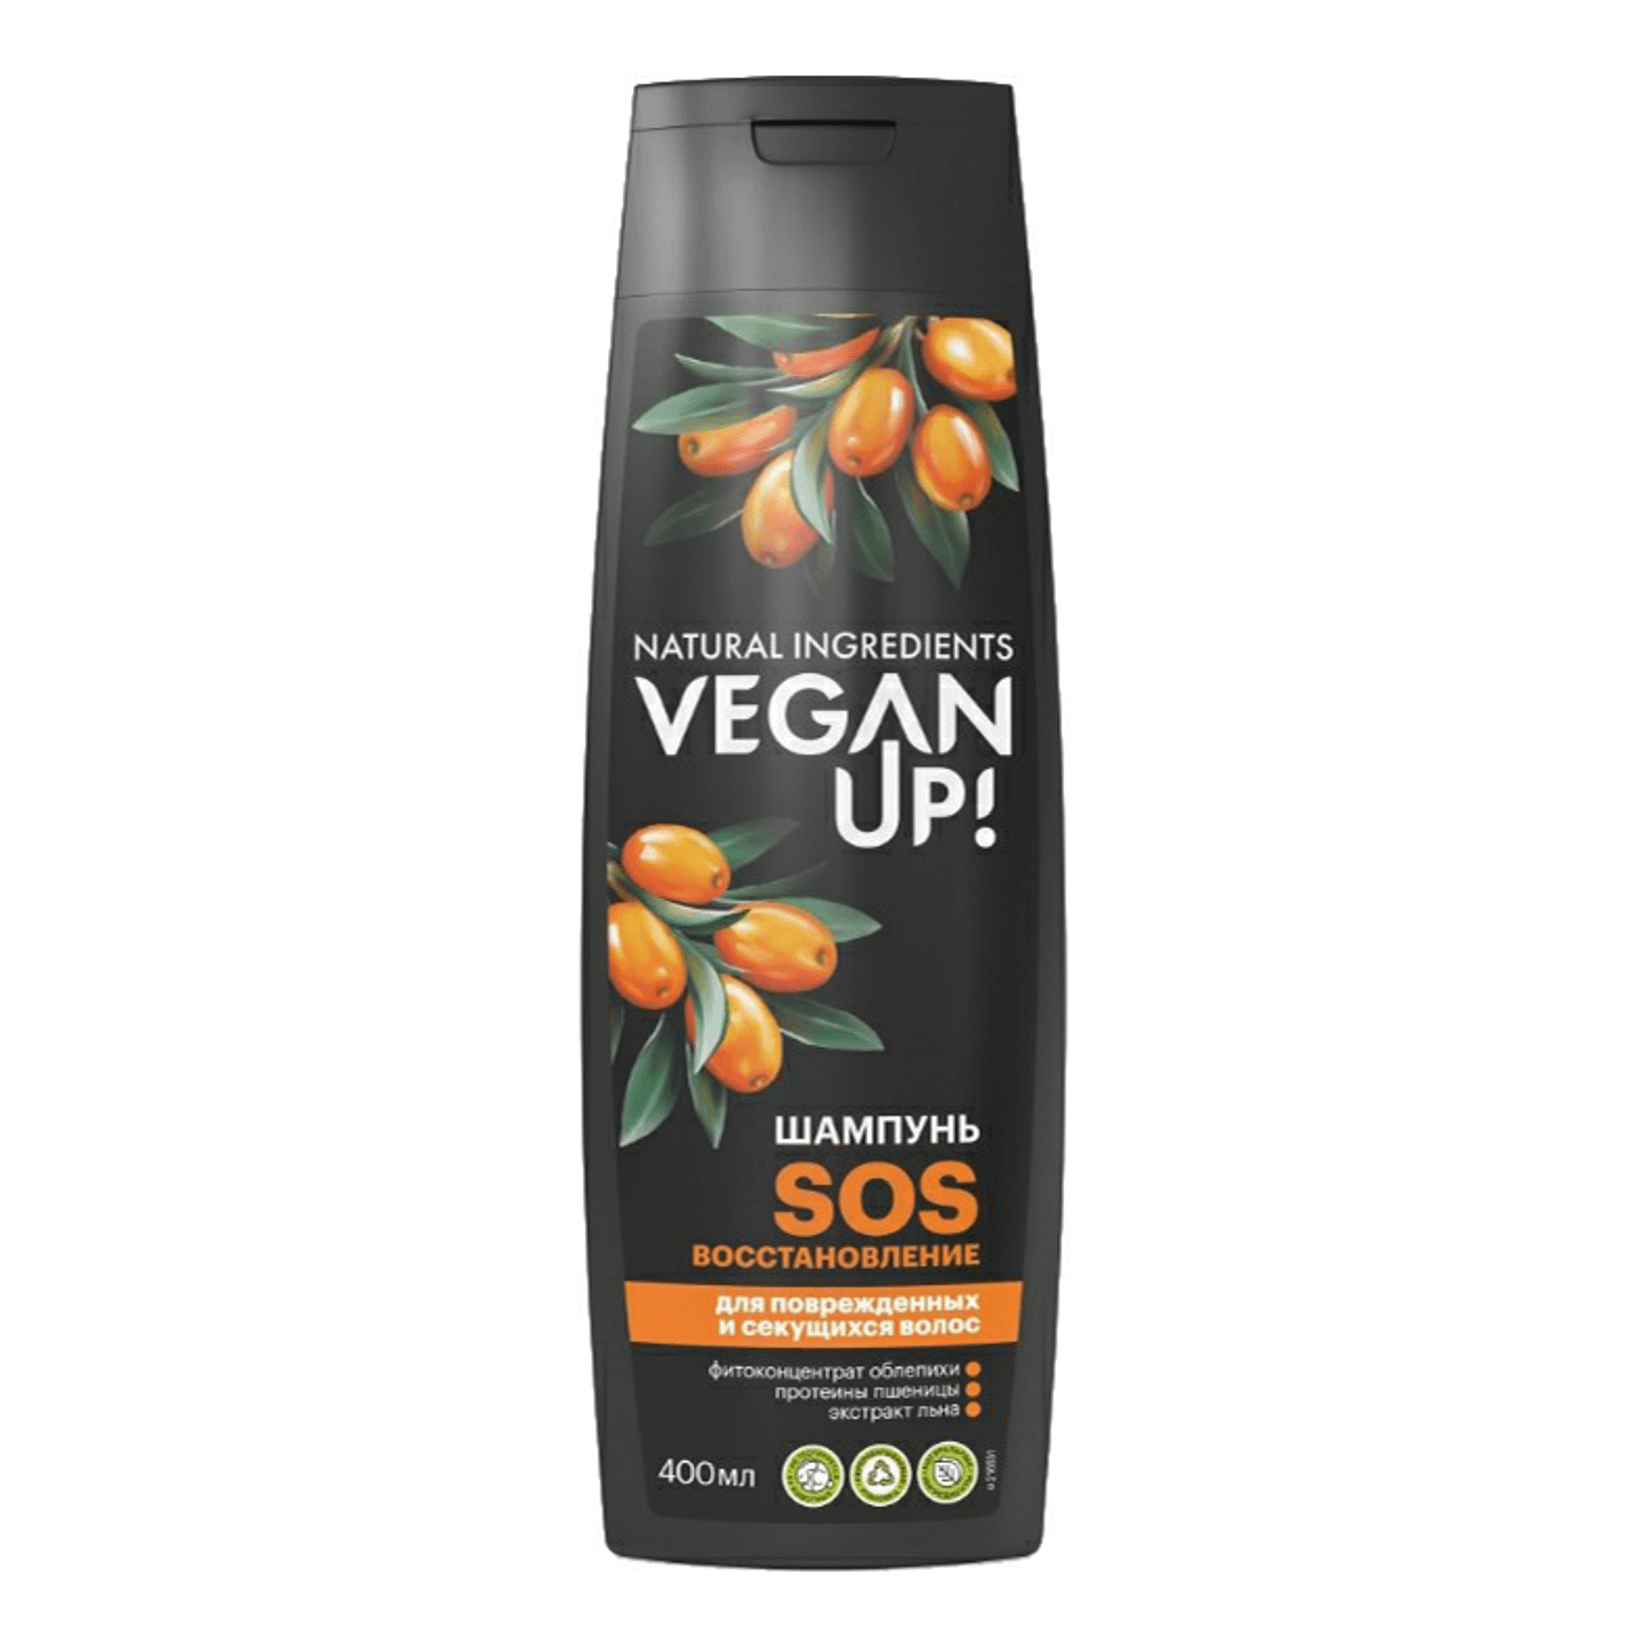 Шампунь VeganUp! SOS-восстановление для поврежденных и секущихся волос 400 мл шампунь для окрашенных волос сочность а garnjuicy veganup 250 мл